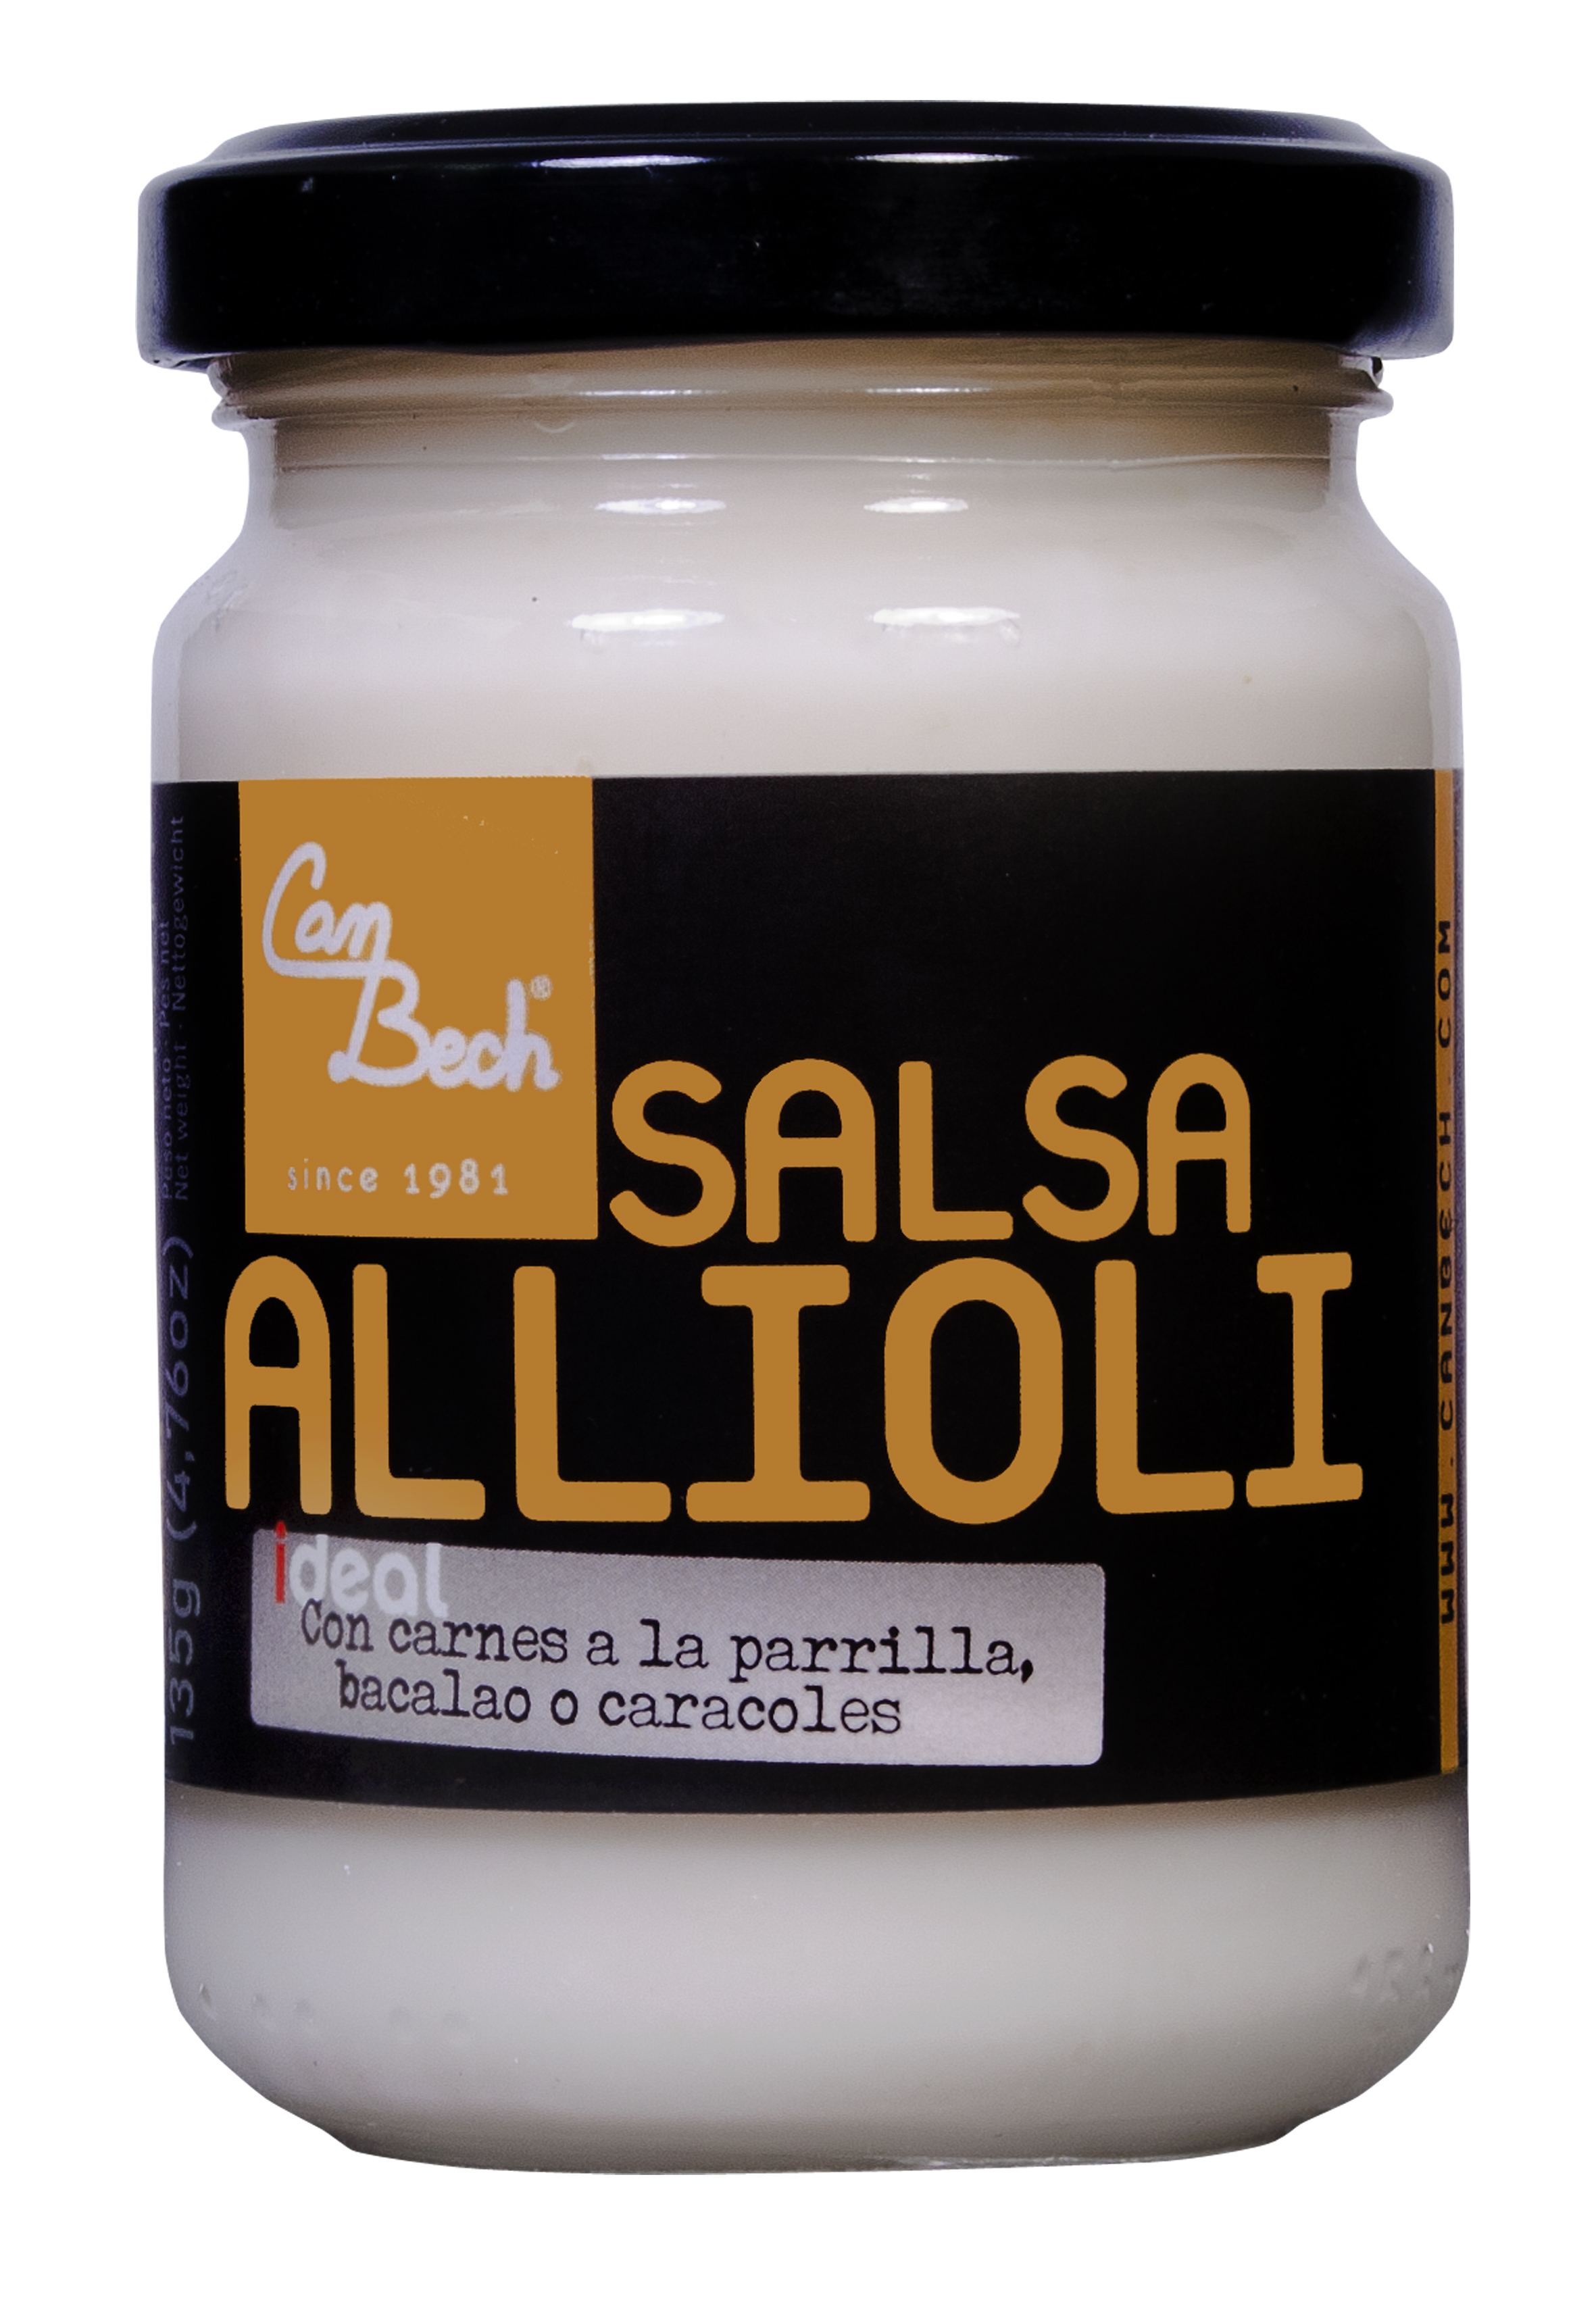  Salsa Allioli